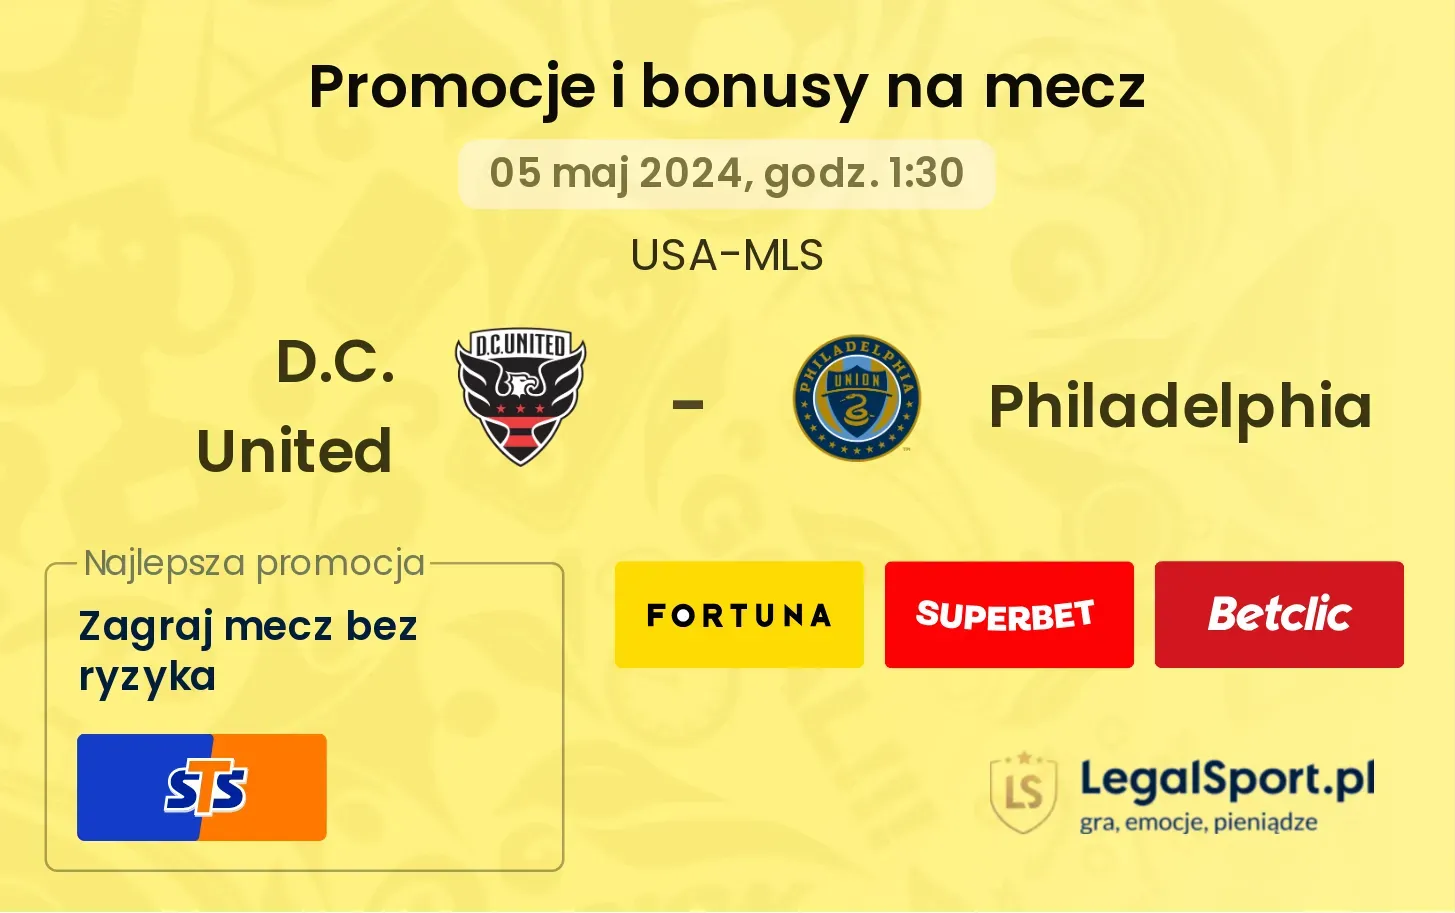 D.C. United - Philadelphia promocje bonusy na mecz